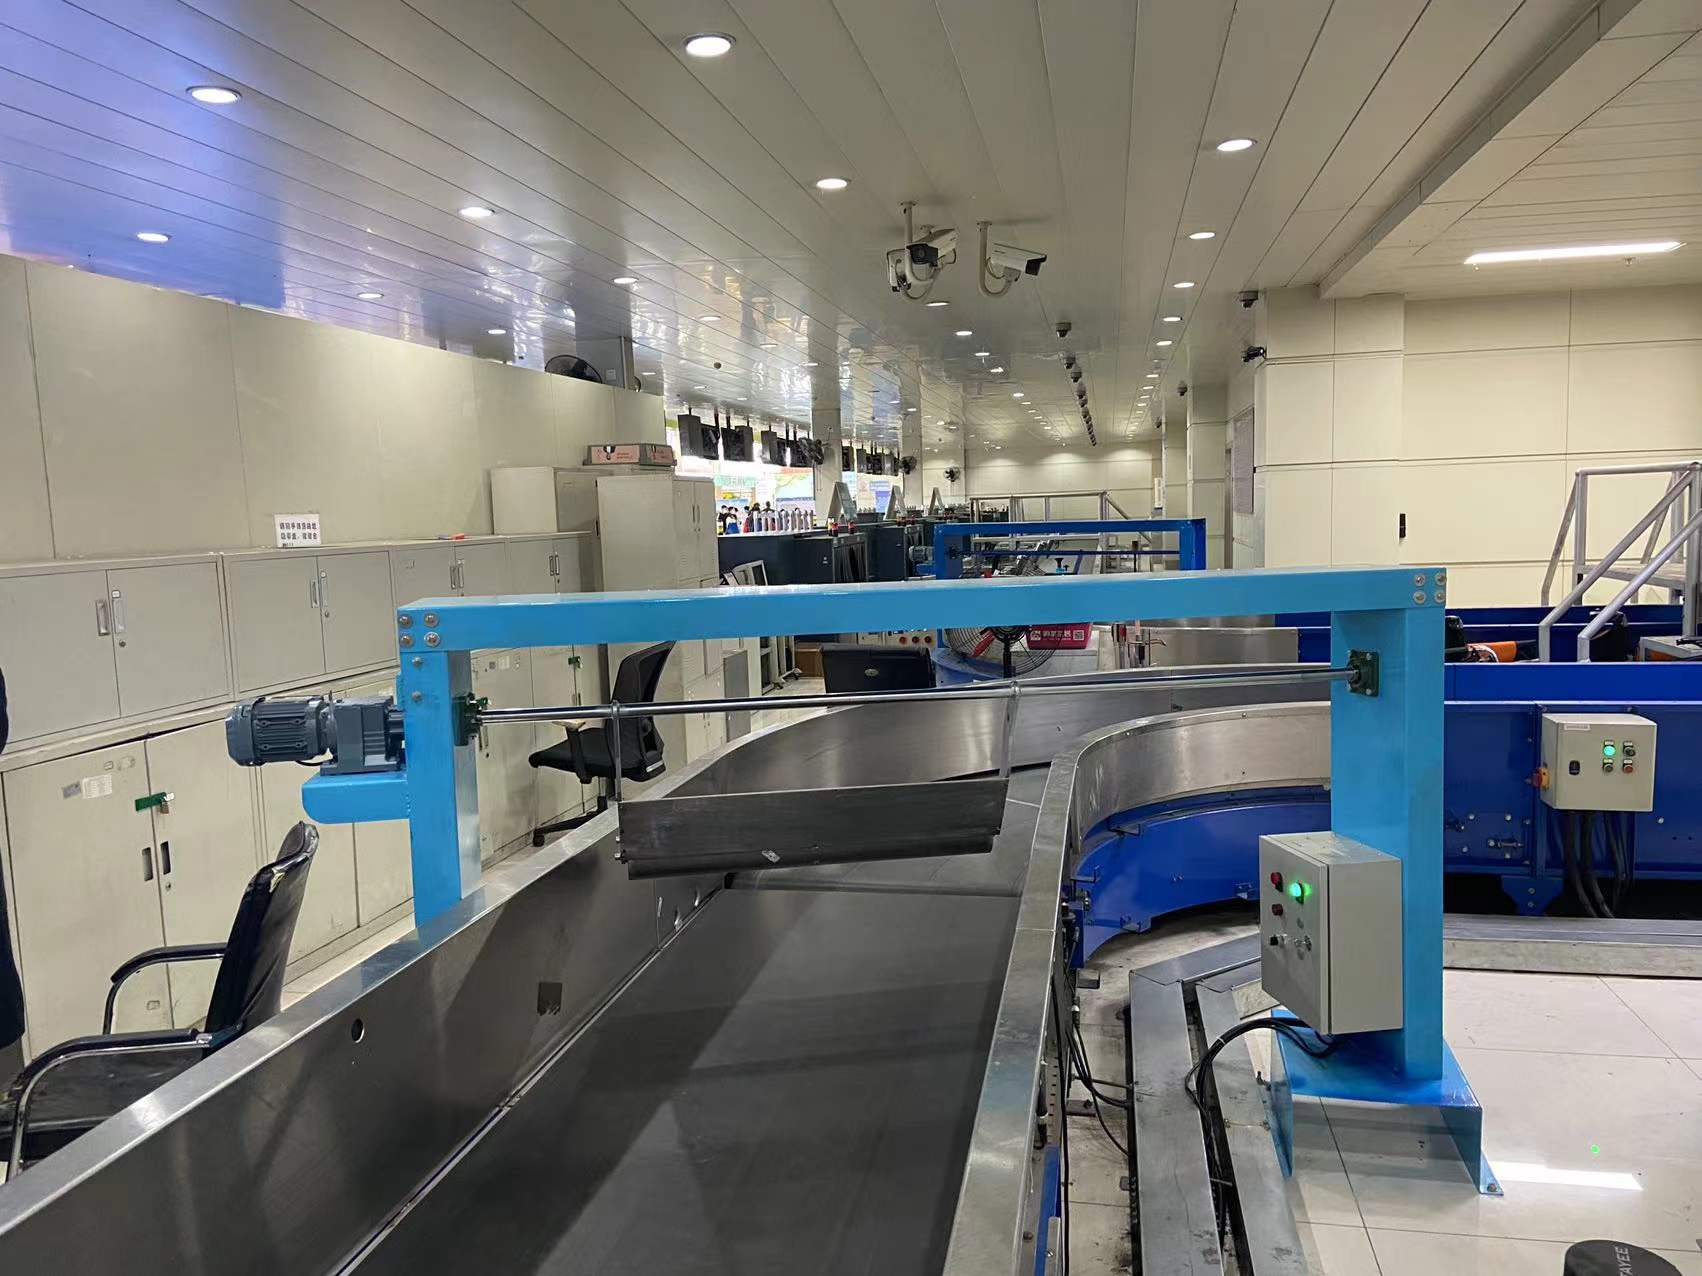 丽江机场行李导包防翻滚装置领先国内中小机场